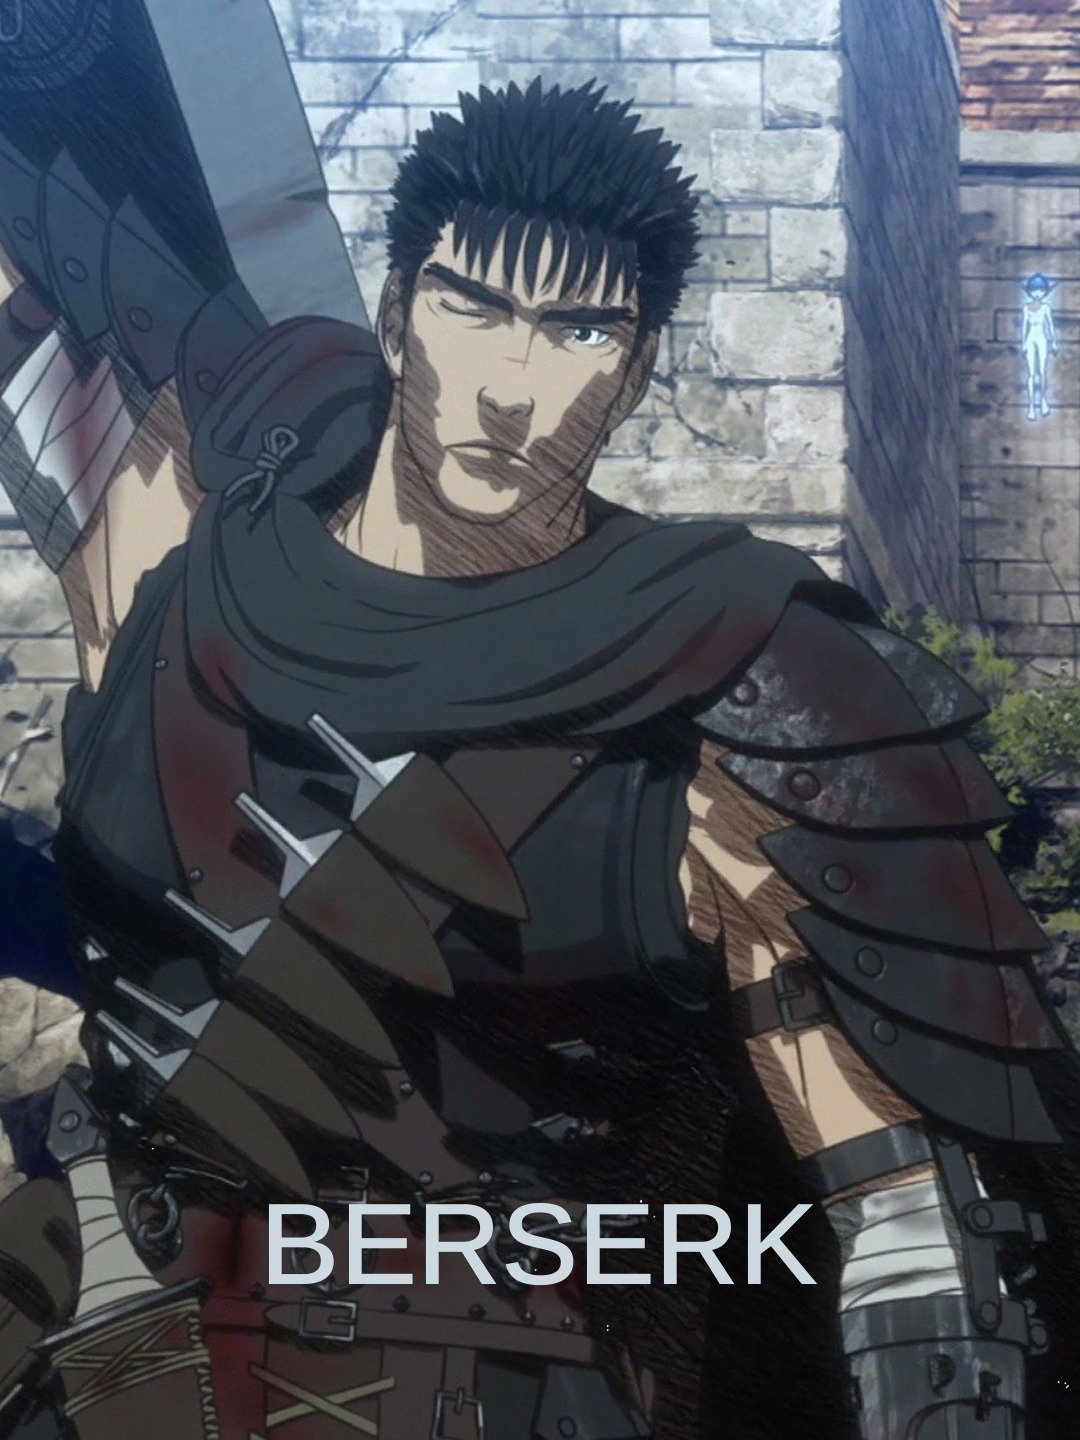 Berserk's Original Anime is Coming to Netflix